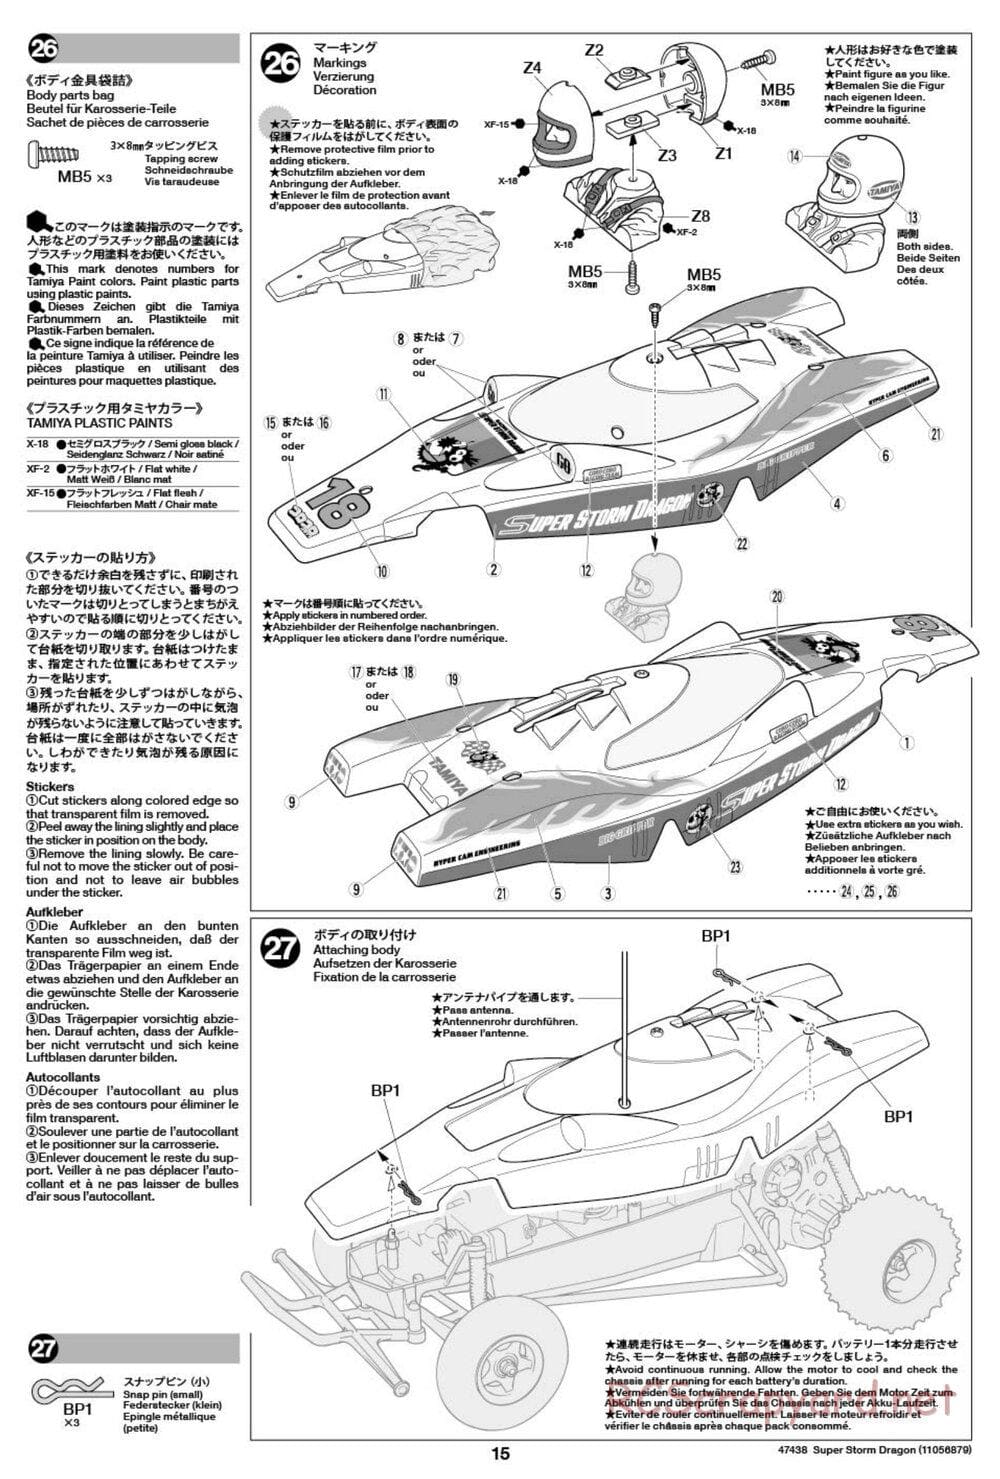 Tamiya - Super Storm Dragon Chassis - Manual - Page 15